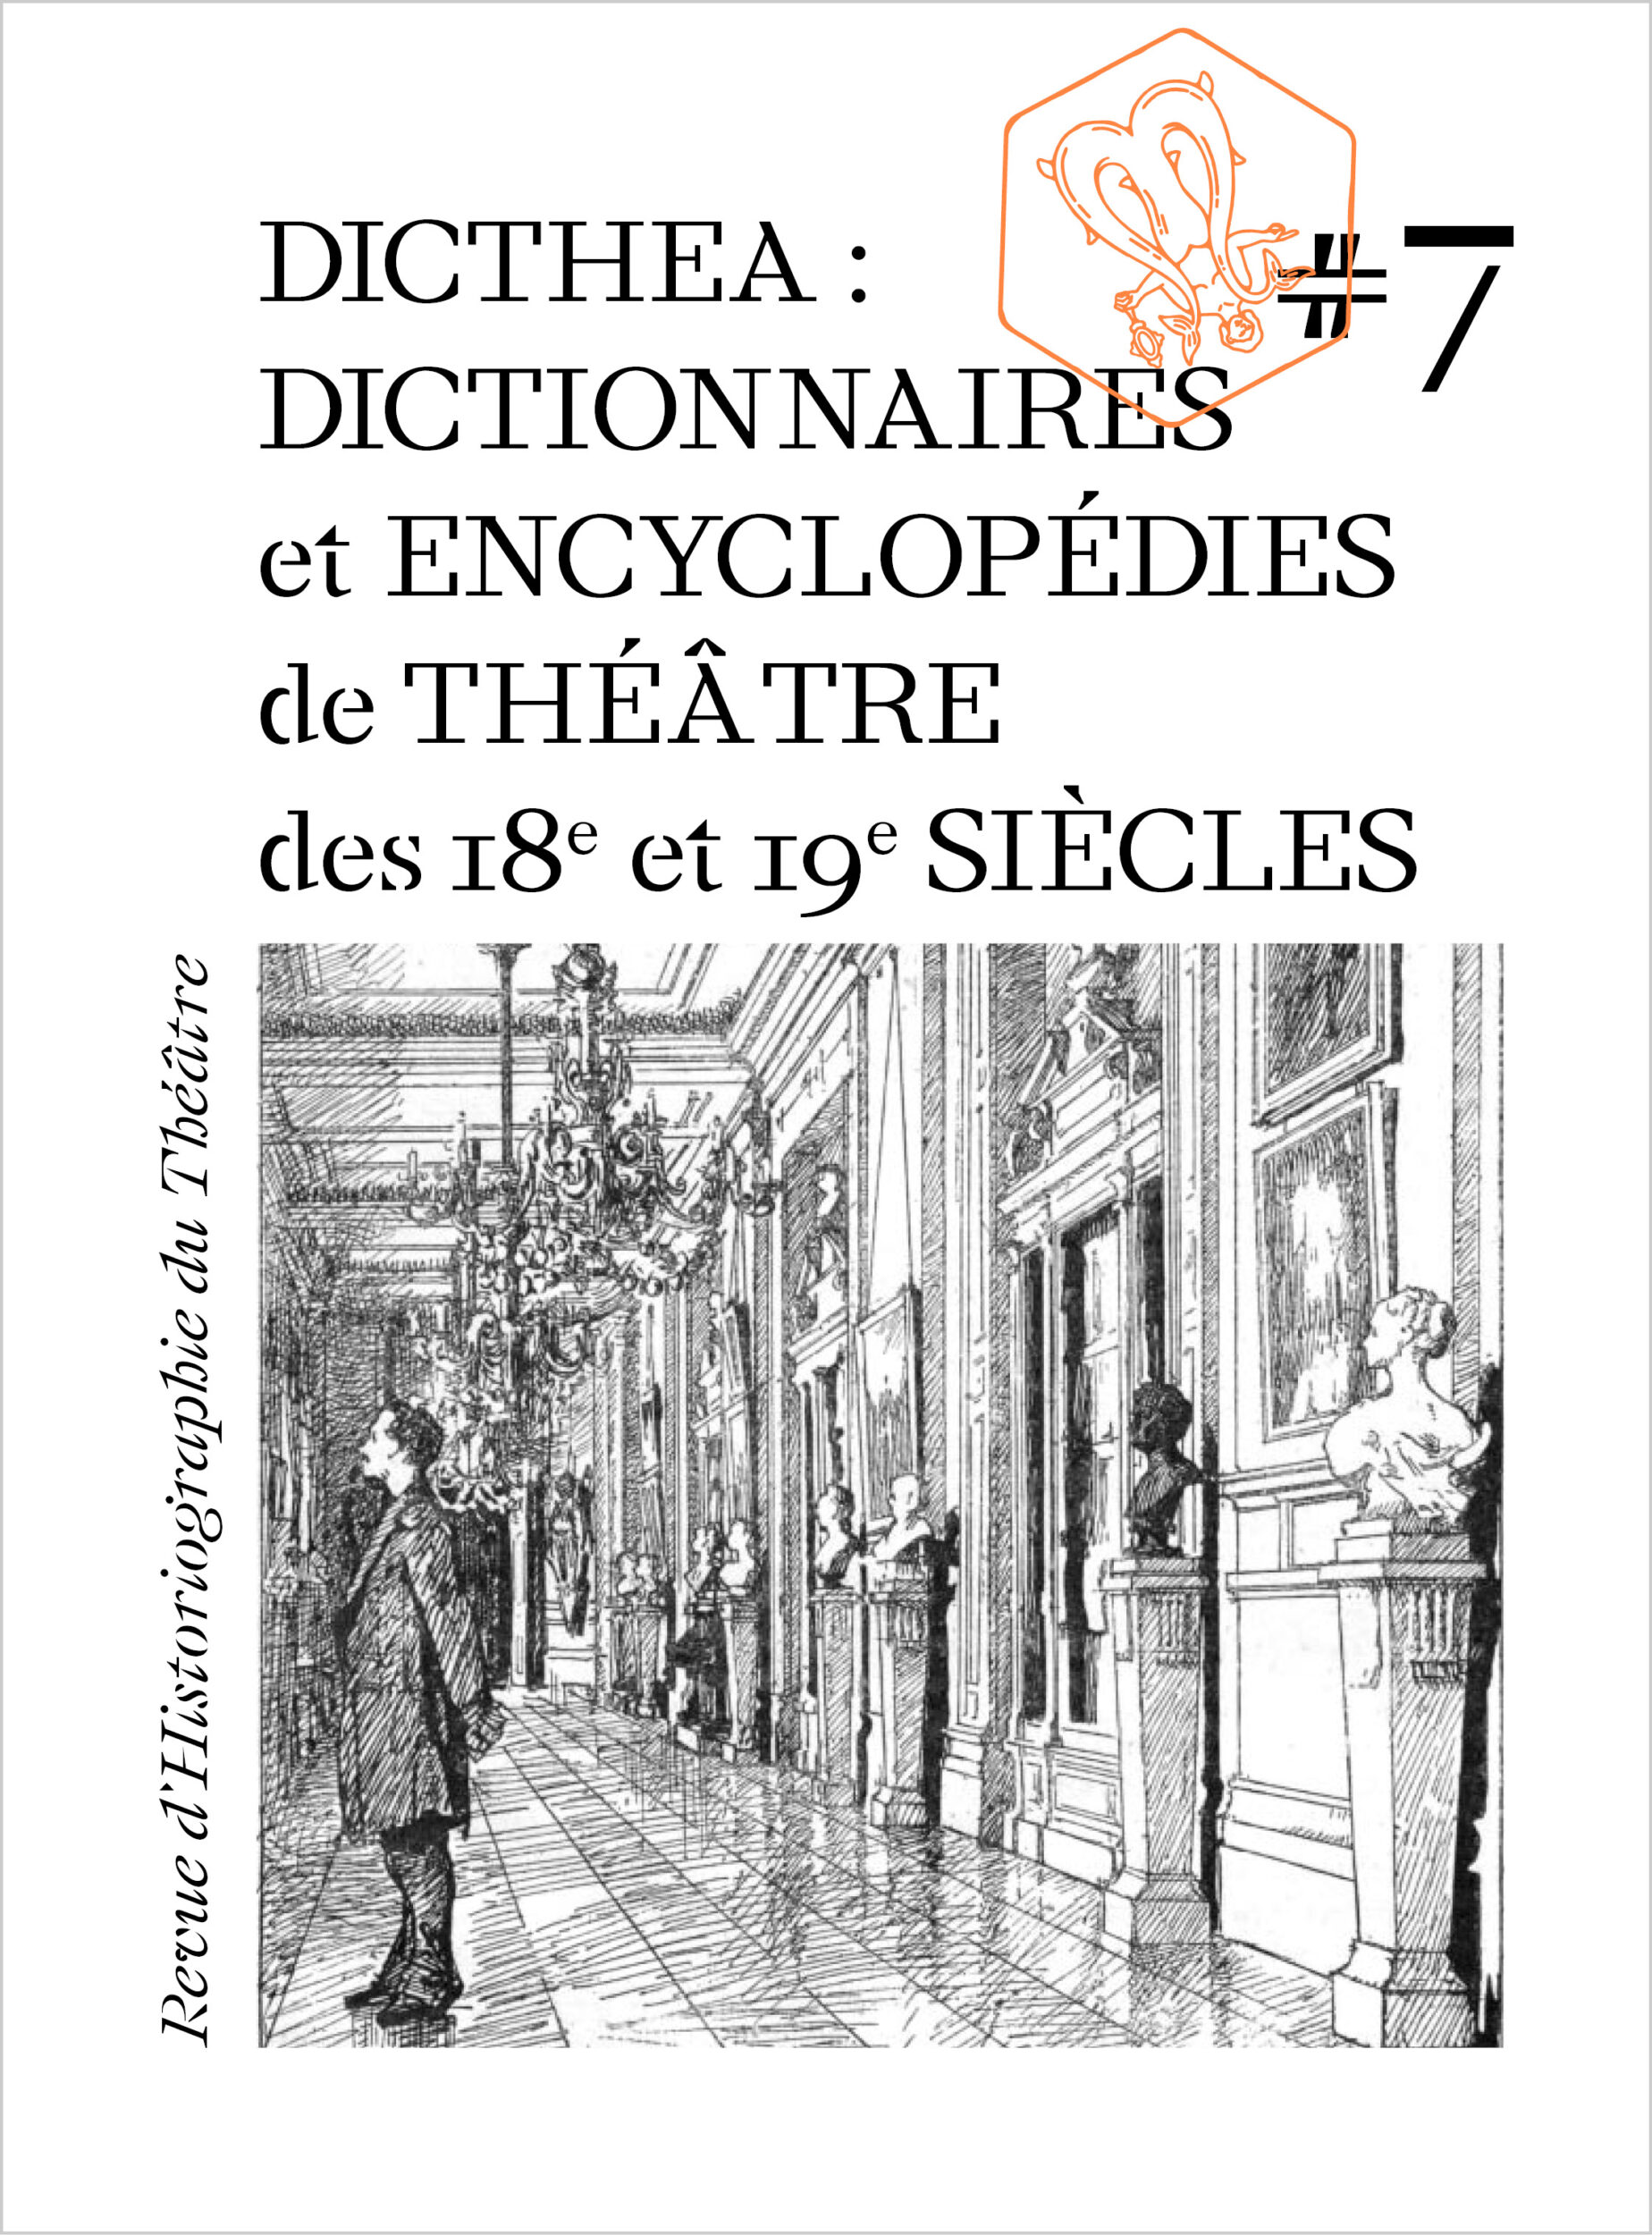 DICTHEA : Dictionnaires et Encyclopédies de théâtre des 18e et 19e siècles